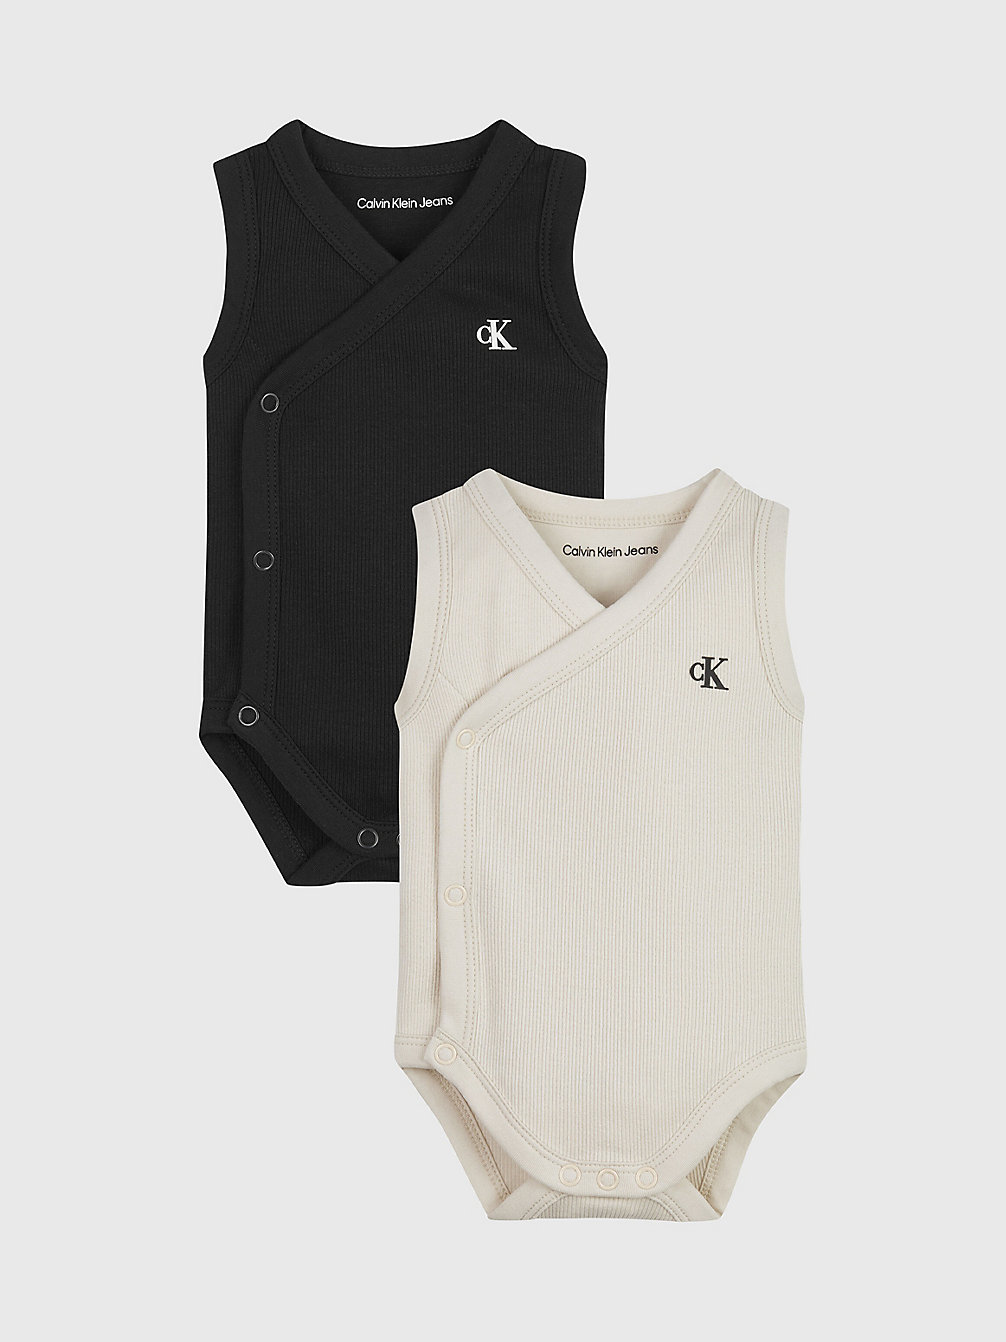 WHITE CAP GRAY / BLACK 2-Pack Mouwloze Newborn Bodysuits undefined newborn Calvin Klein